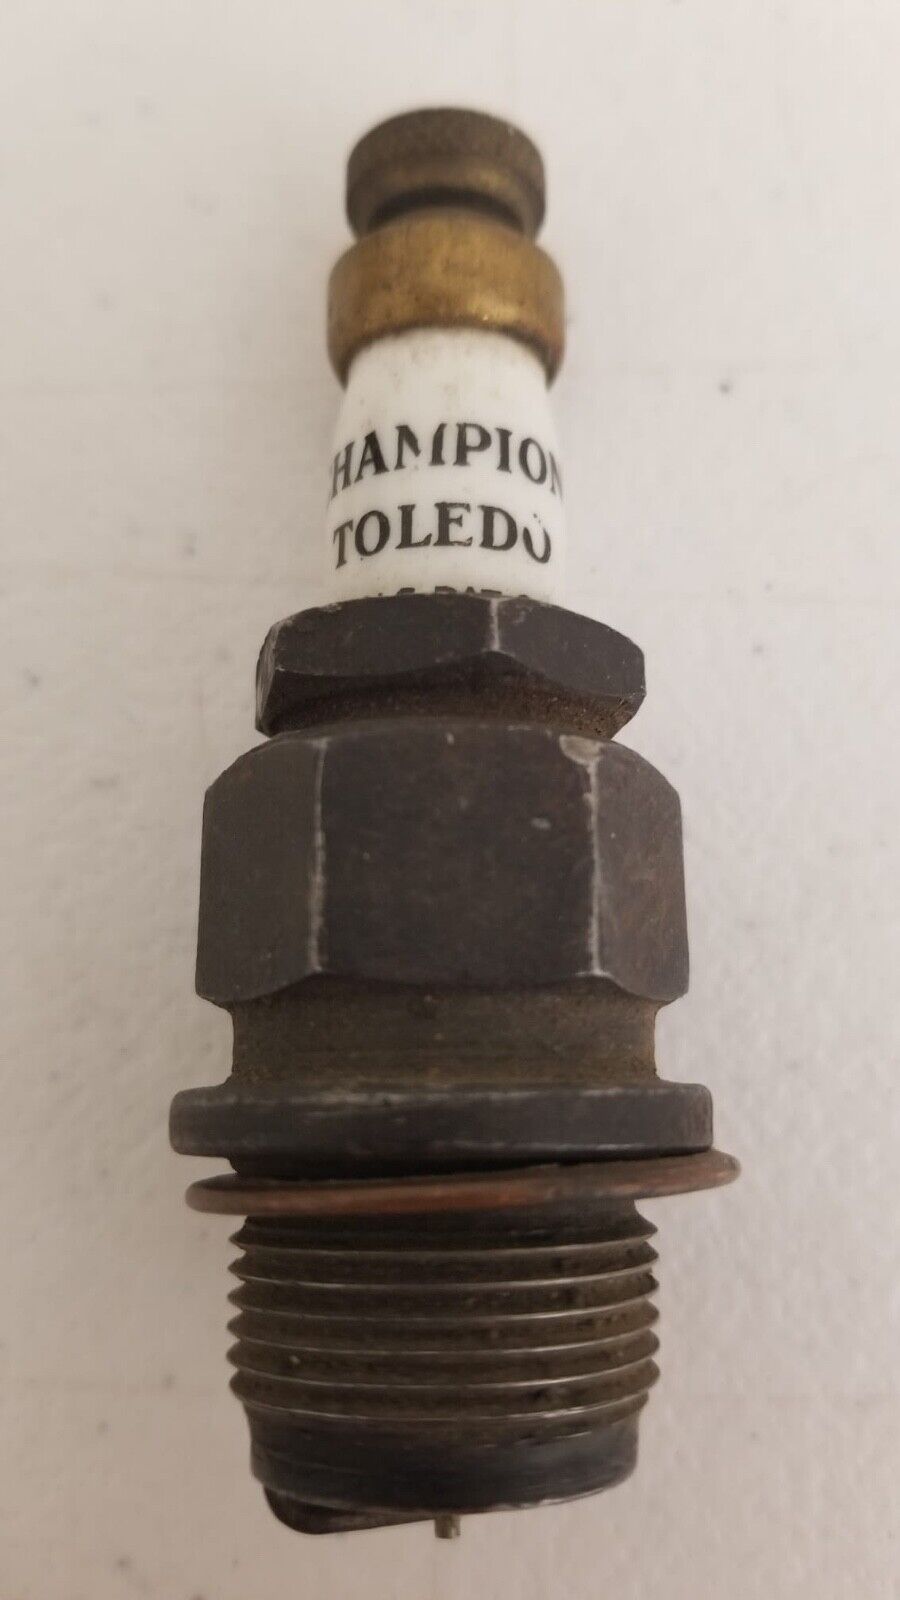 Rare Antique Champion Toledo Spark Plug 1910-1930s Vintage Car Part Collectible